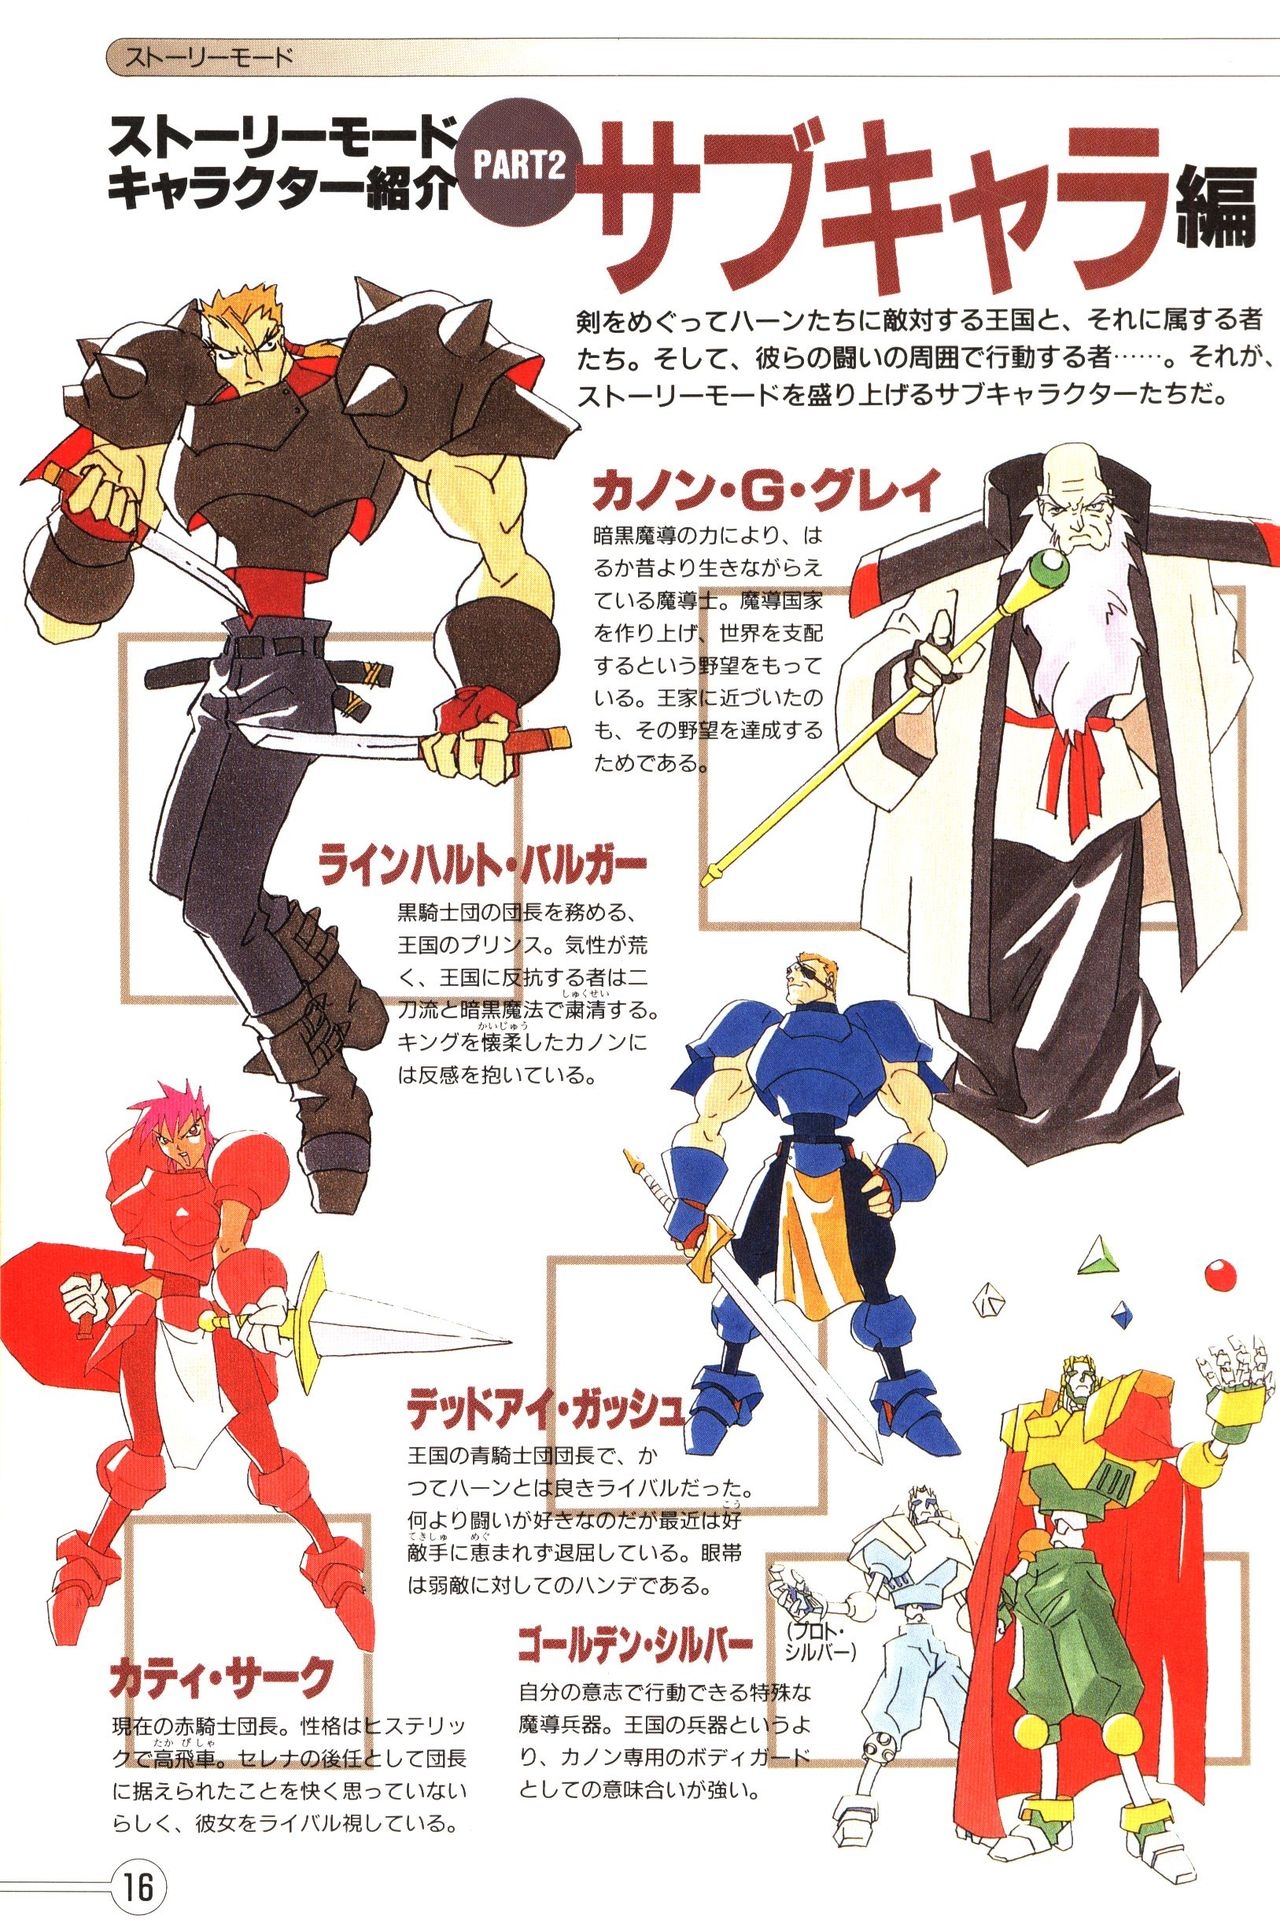 Guardian Heroes Perfect Guide (Sega Saturn magazine books) 18